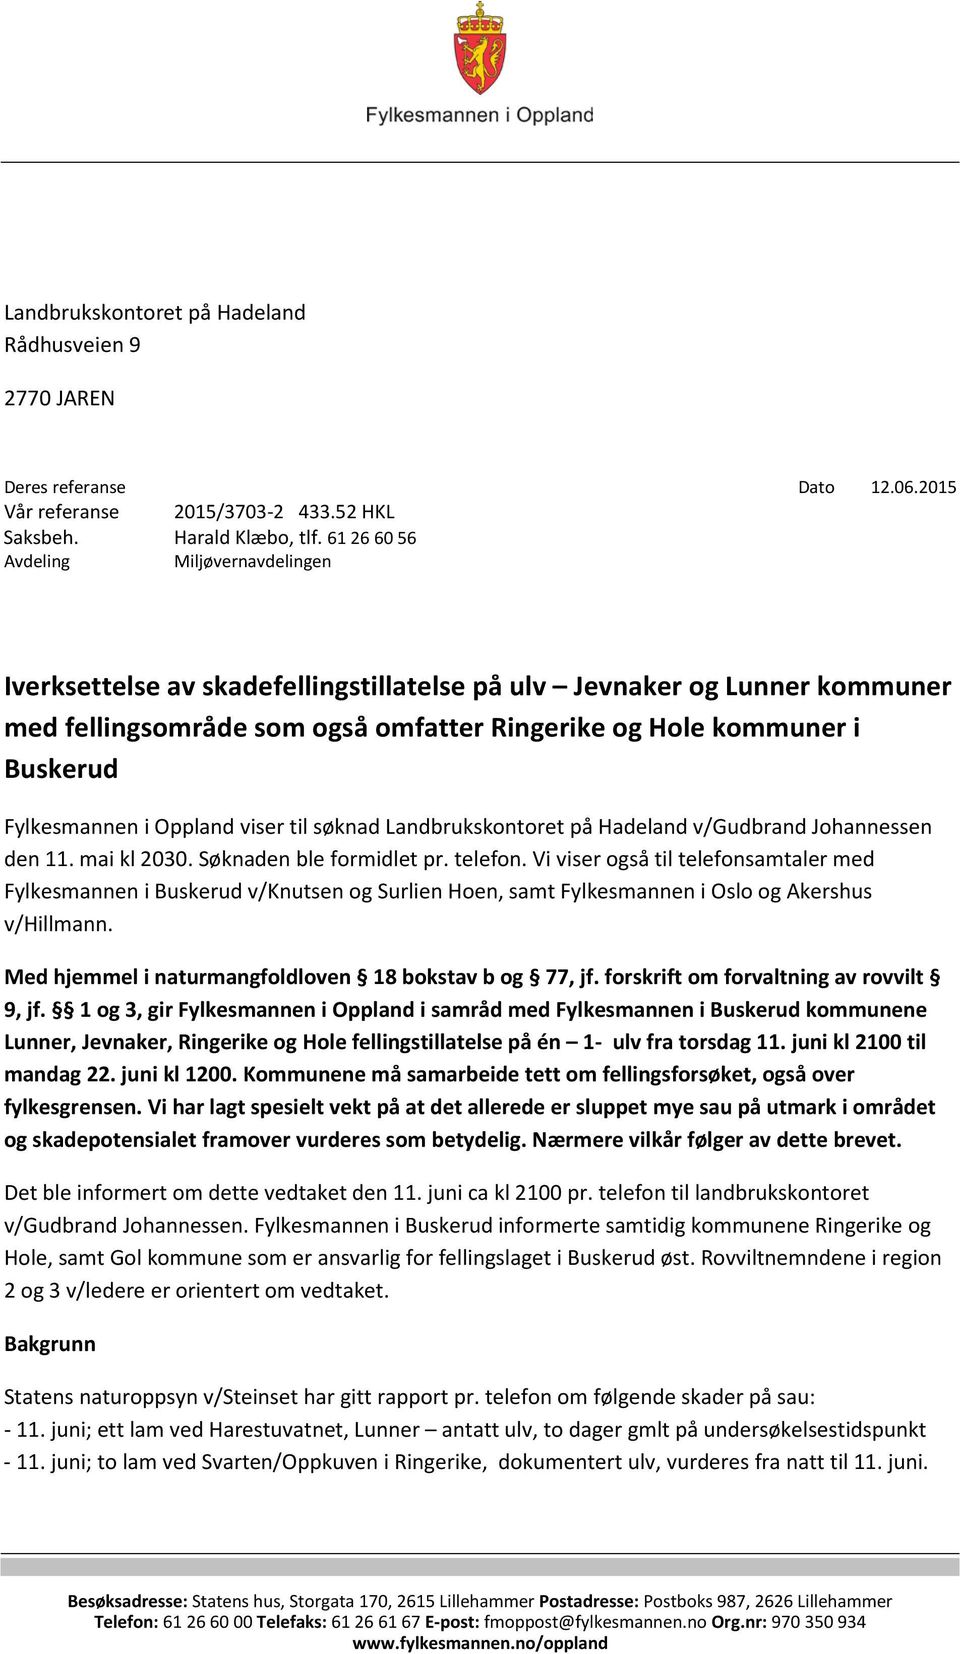 Fylkesmannen i Oppland viser til søknad Landbrukskontoret på Hadeland v/gudbrand Johannessen den 11. mai kl 2030. Søknaden ble formidlet pr. telefon.